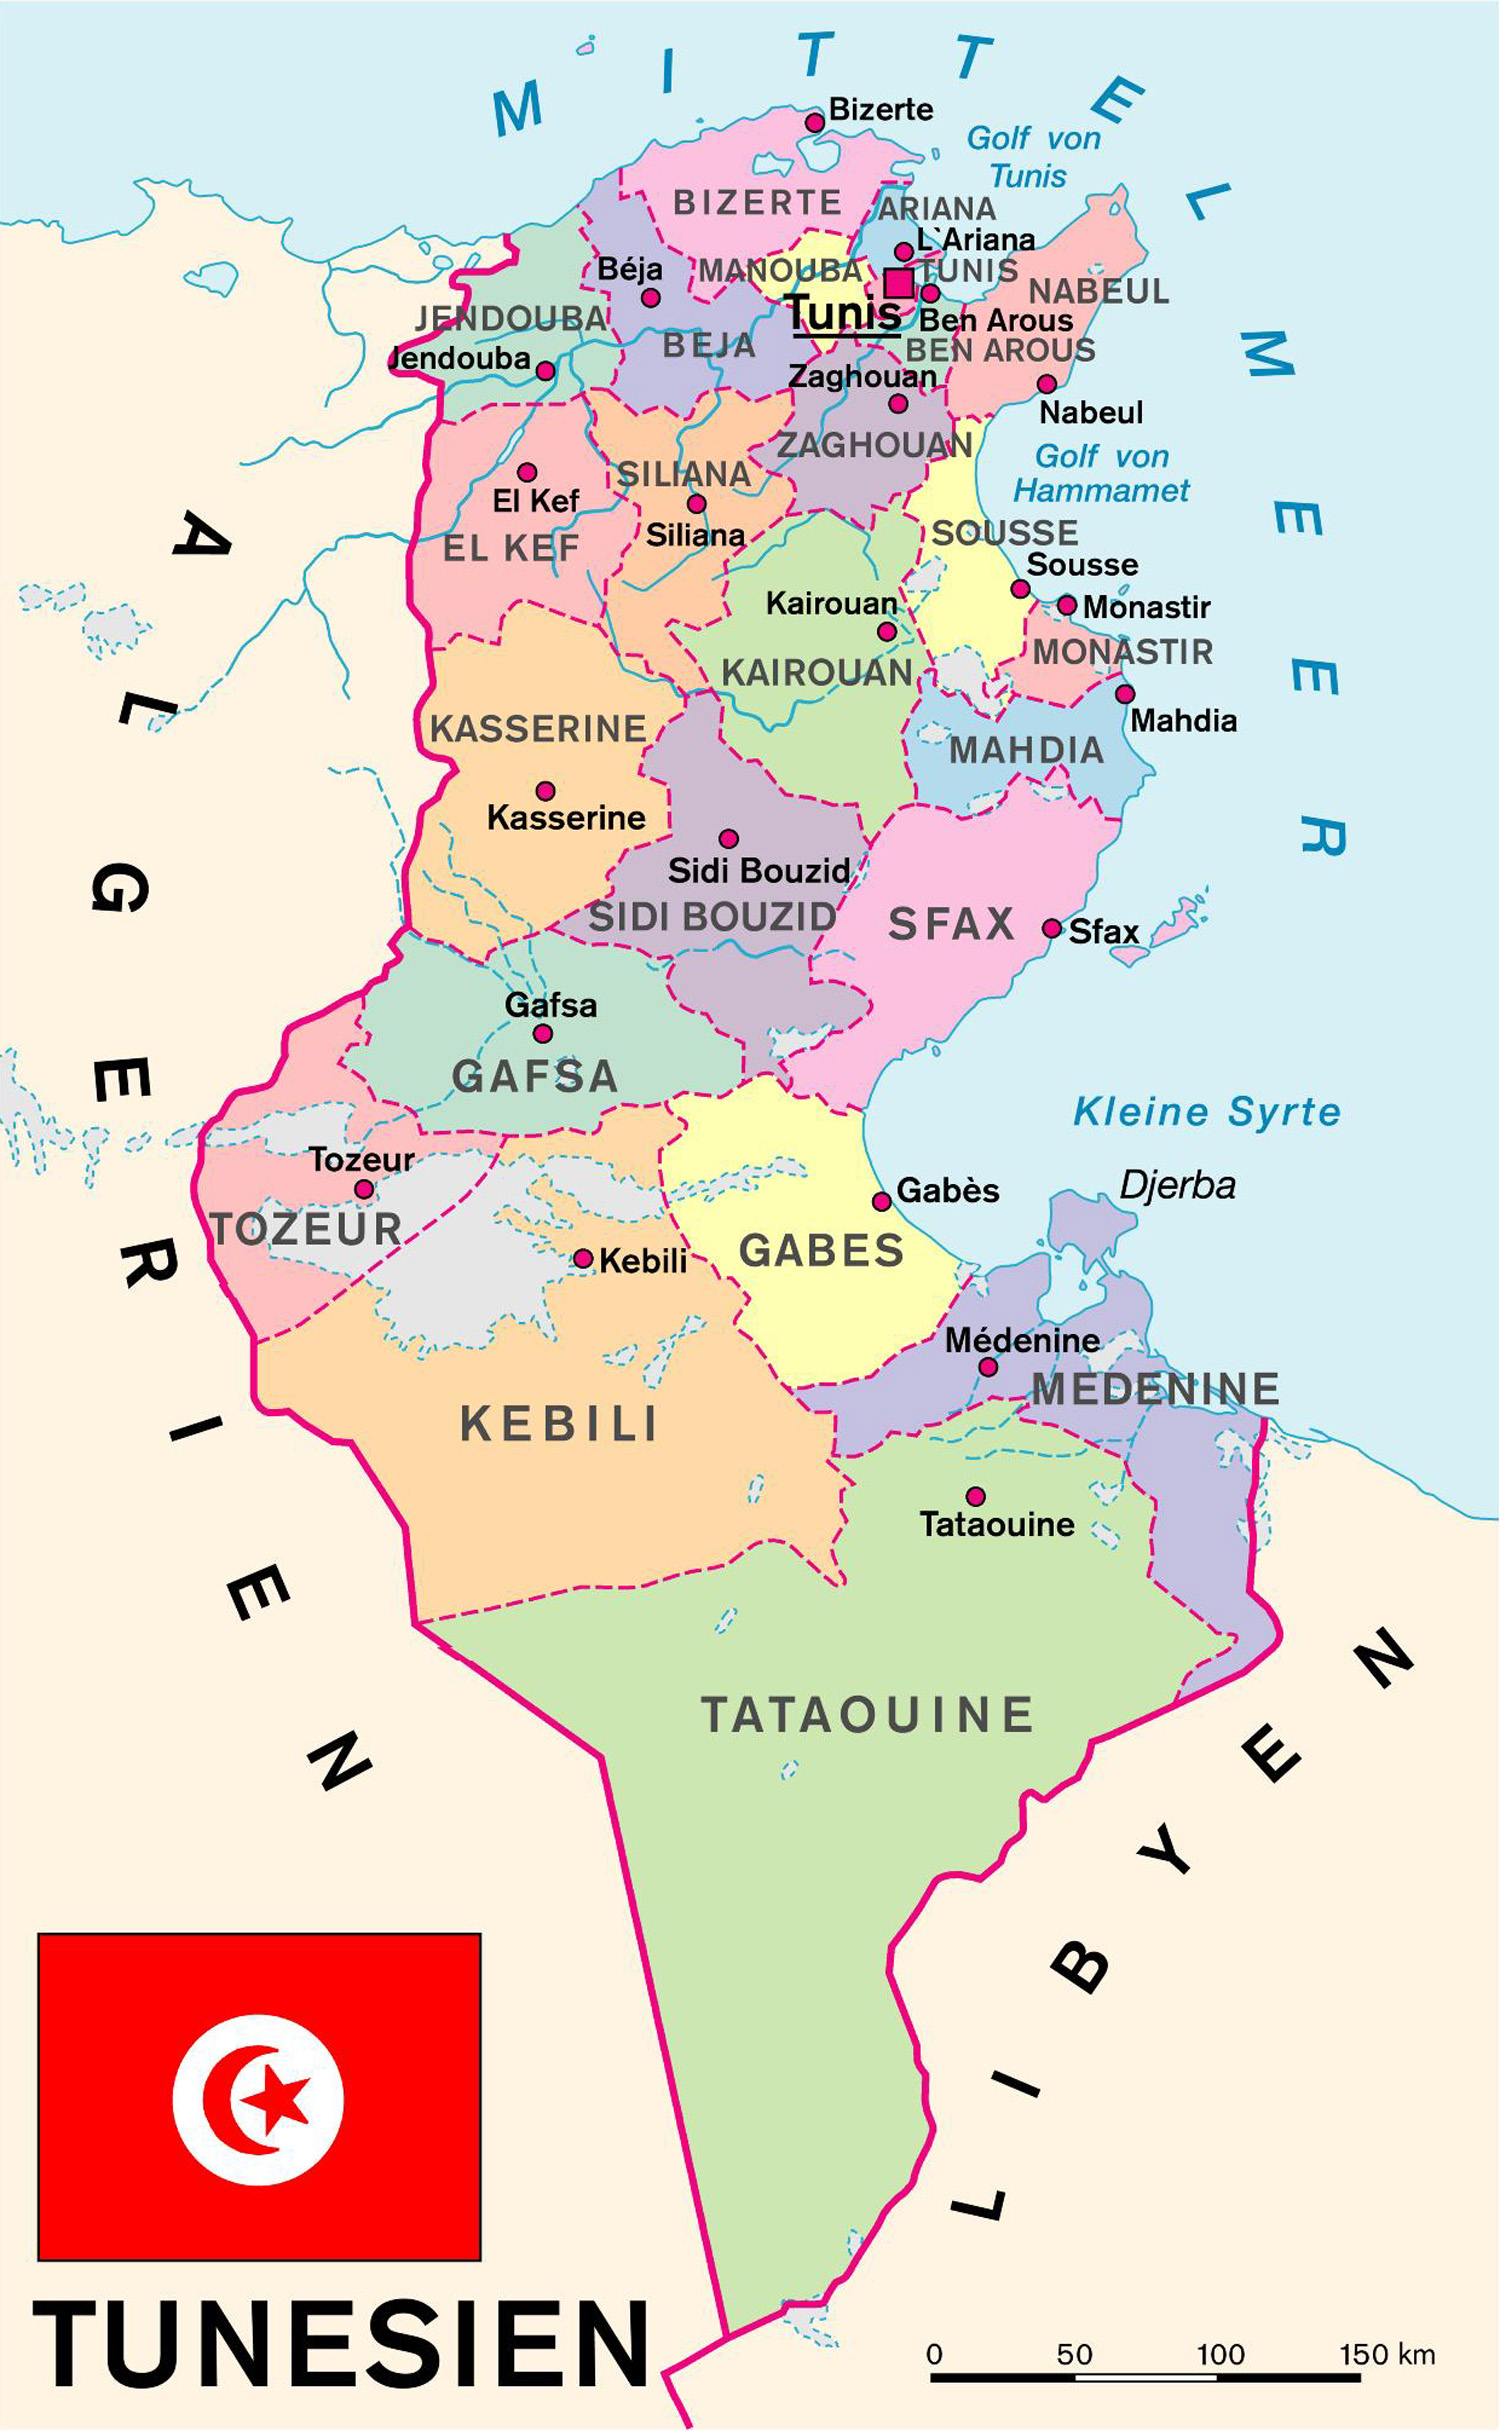 Die Karte zeigt die administrative Gliederung des Landes mit den regionalen Hauptstädten.